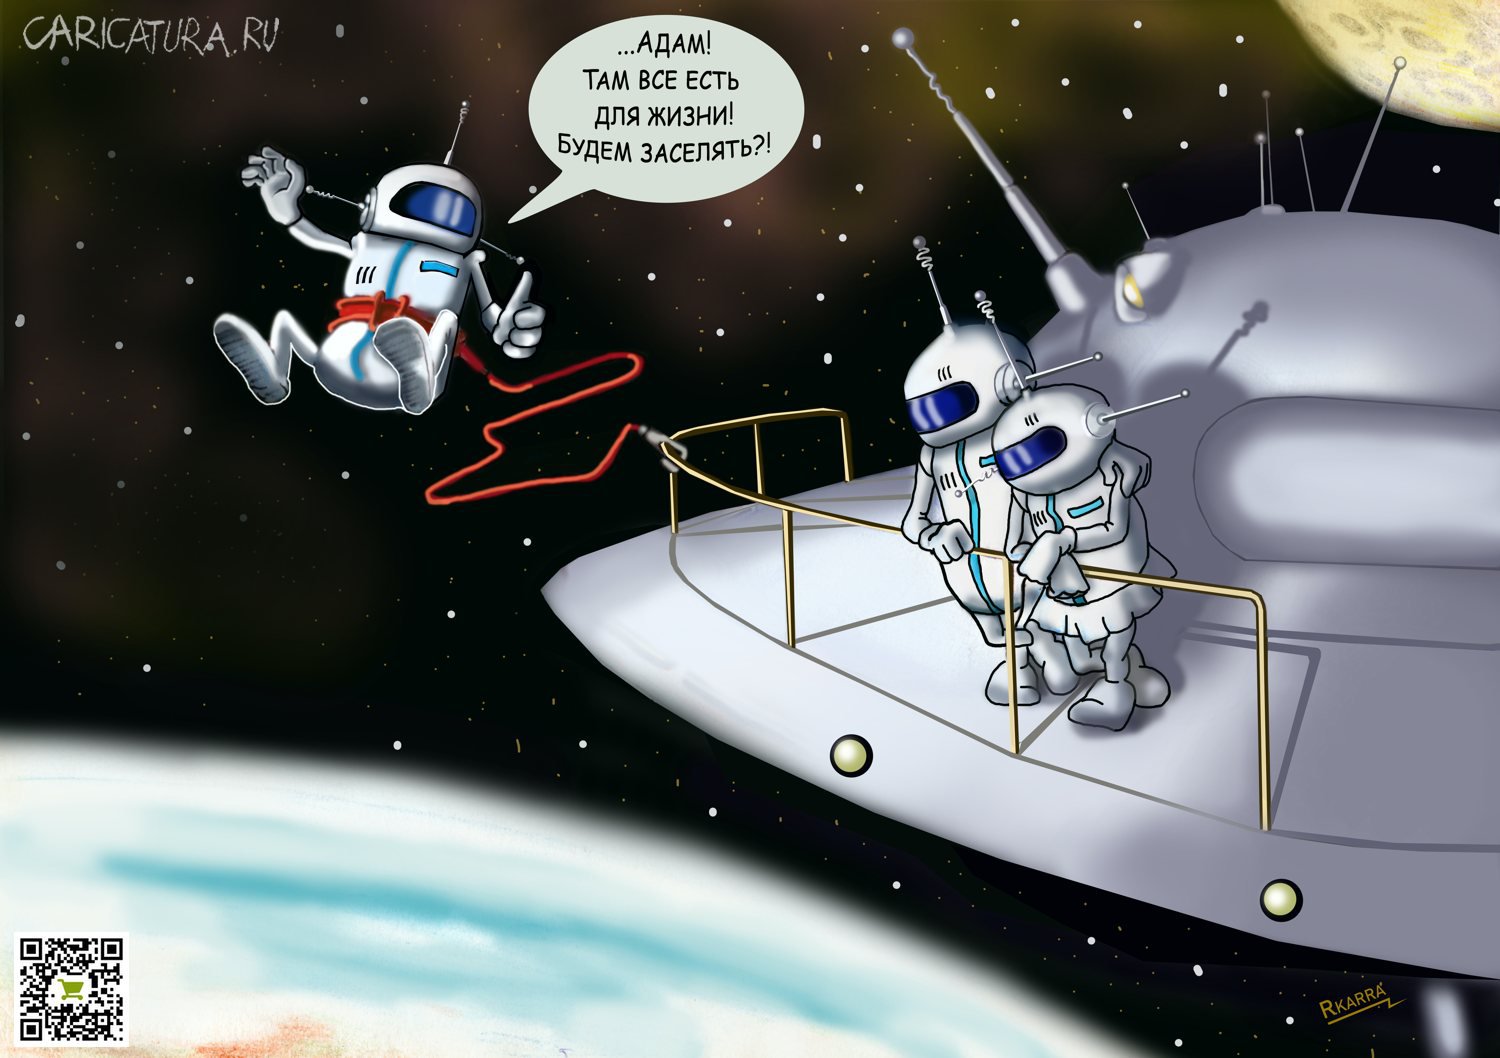 Карикатура "Загадки Третьей планеты", Раф Карин